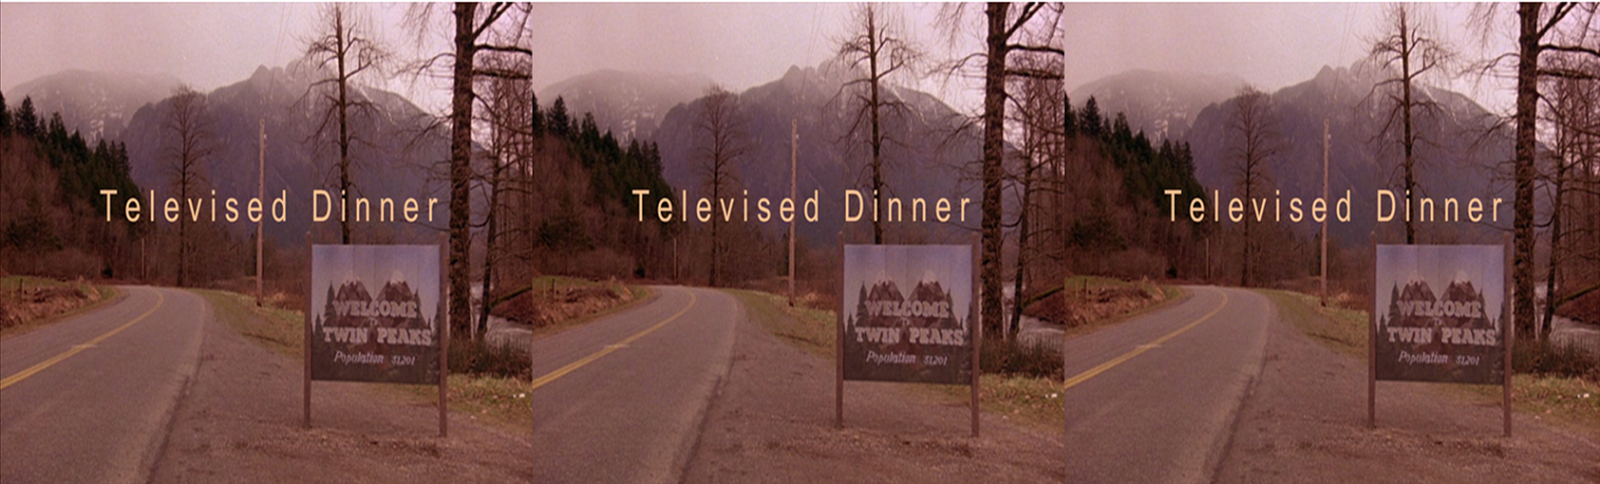 Televised Dinner